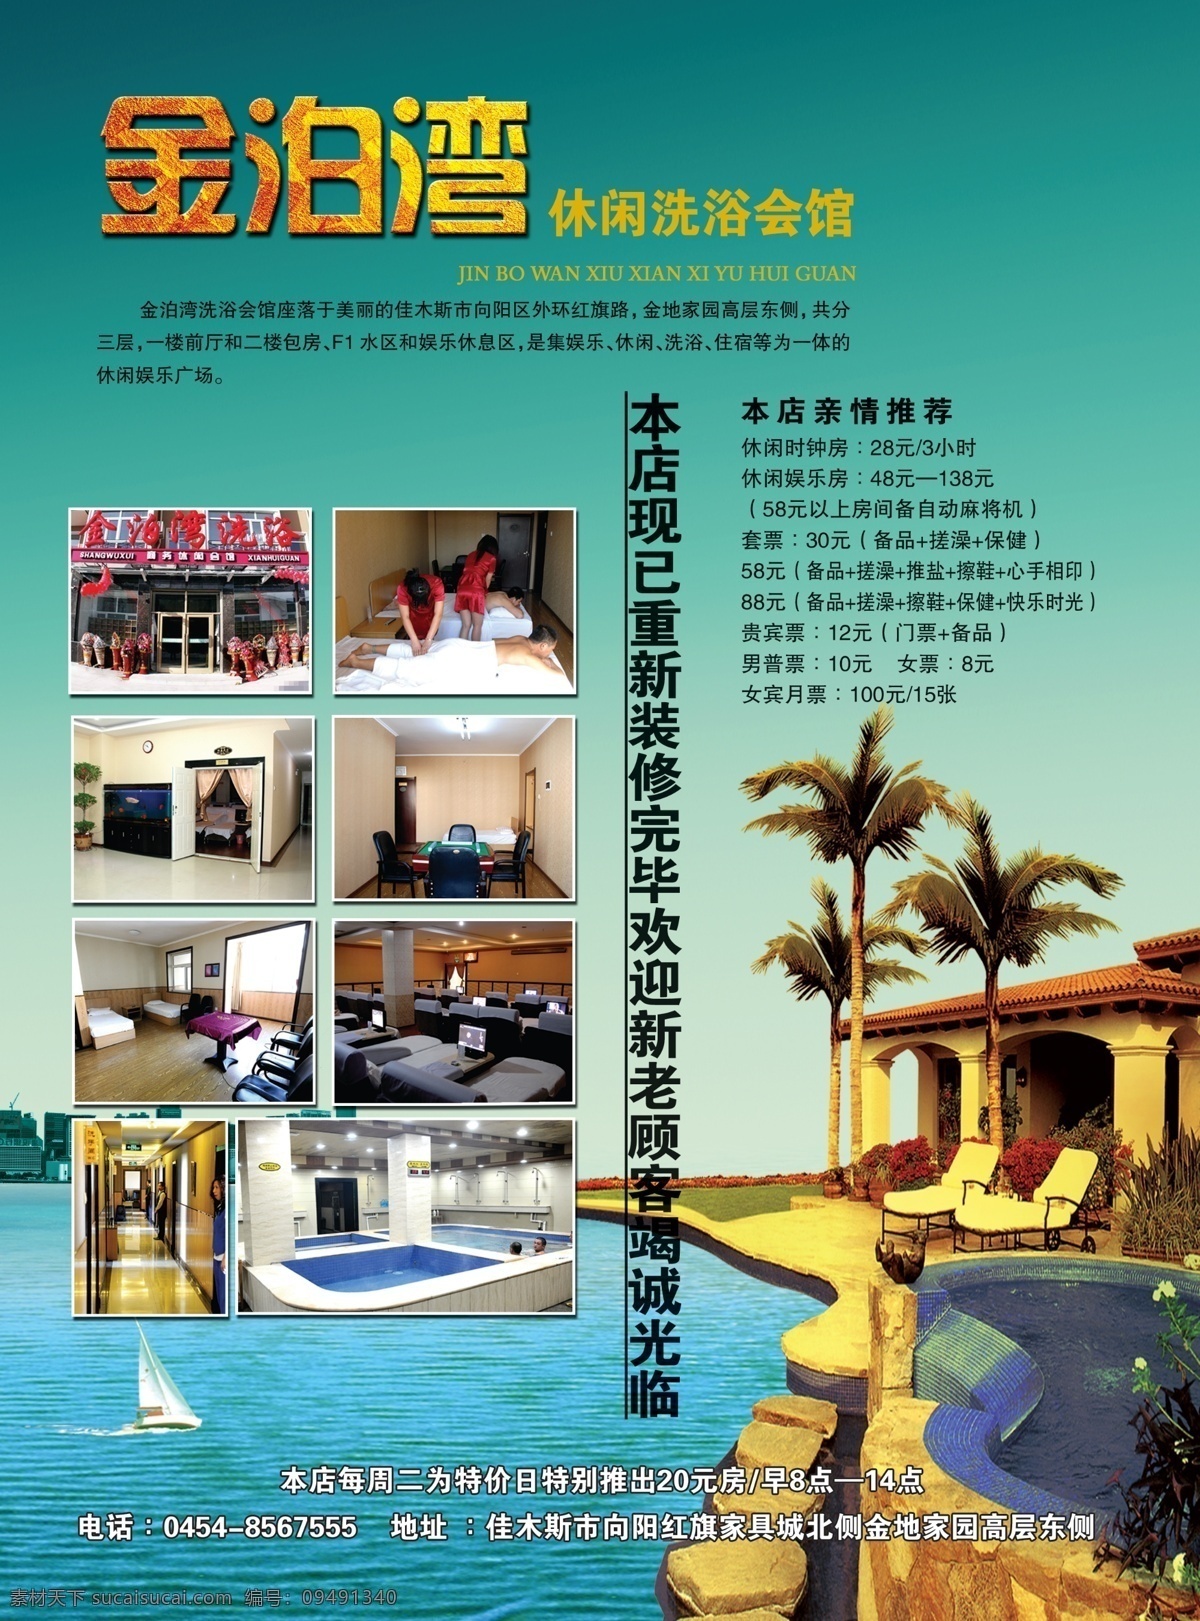 洗浴中心广告 洗浴 金色 岛 海洋 广告 画册 杂志 psd分层 广告设计模板 源文件